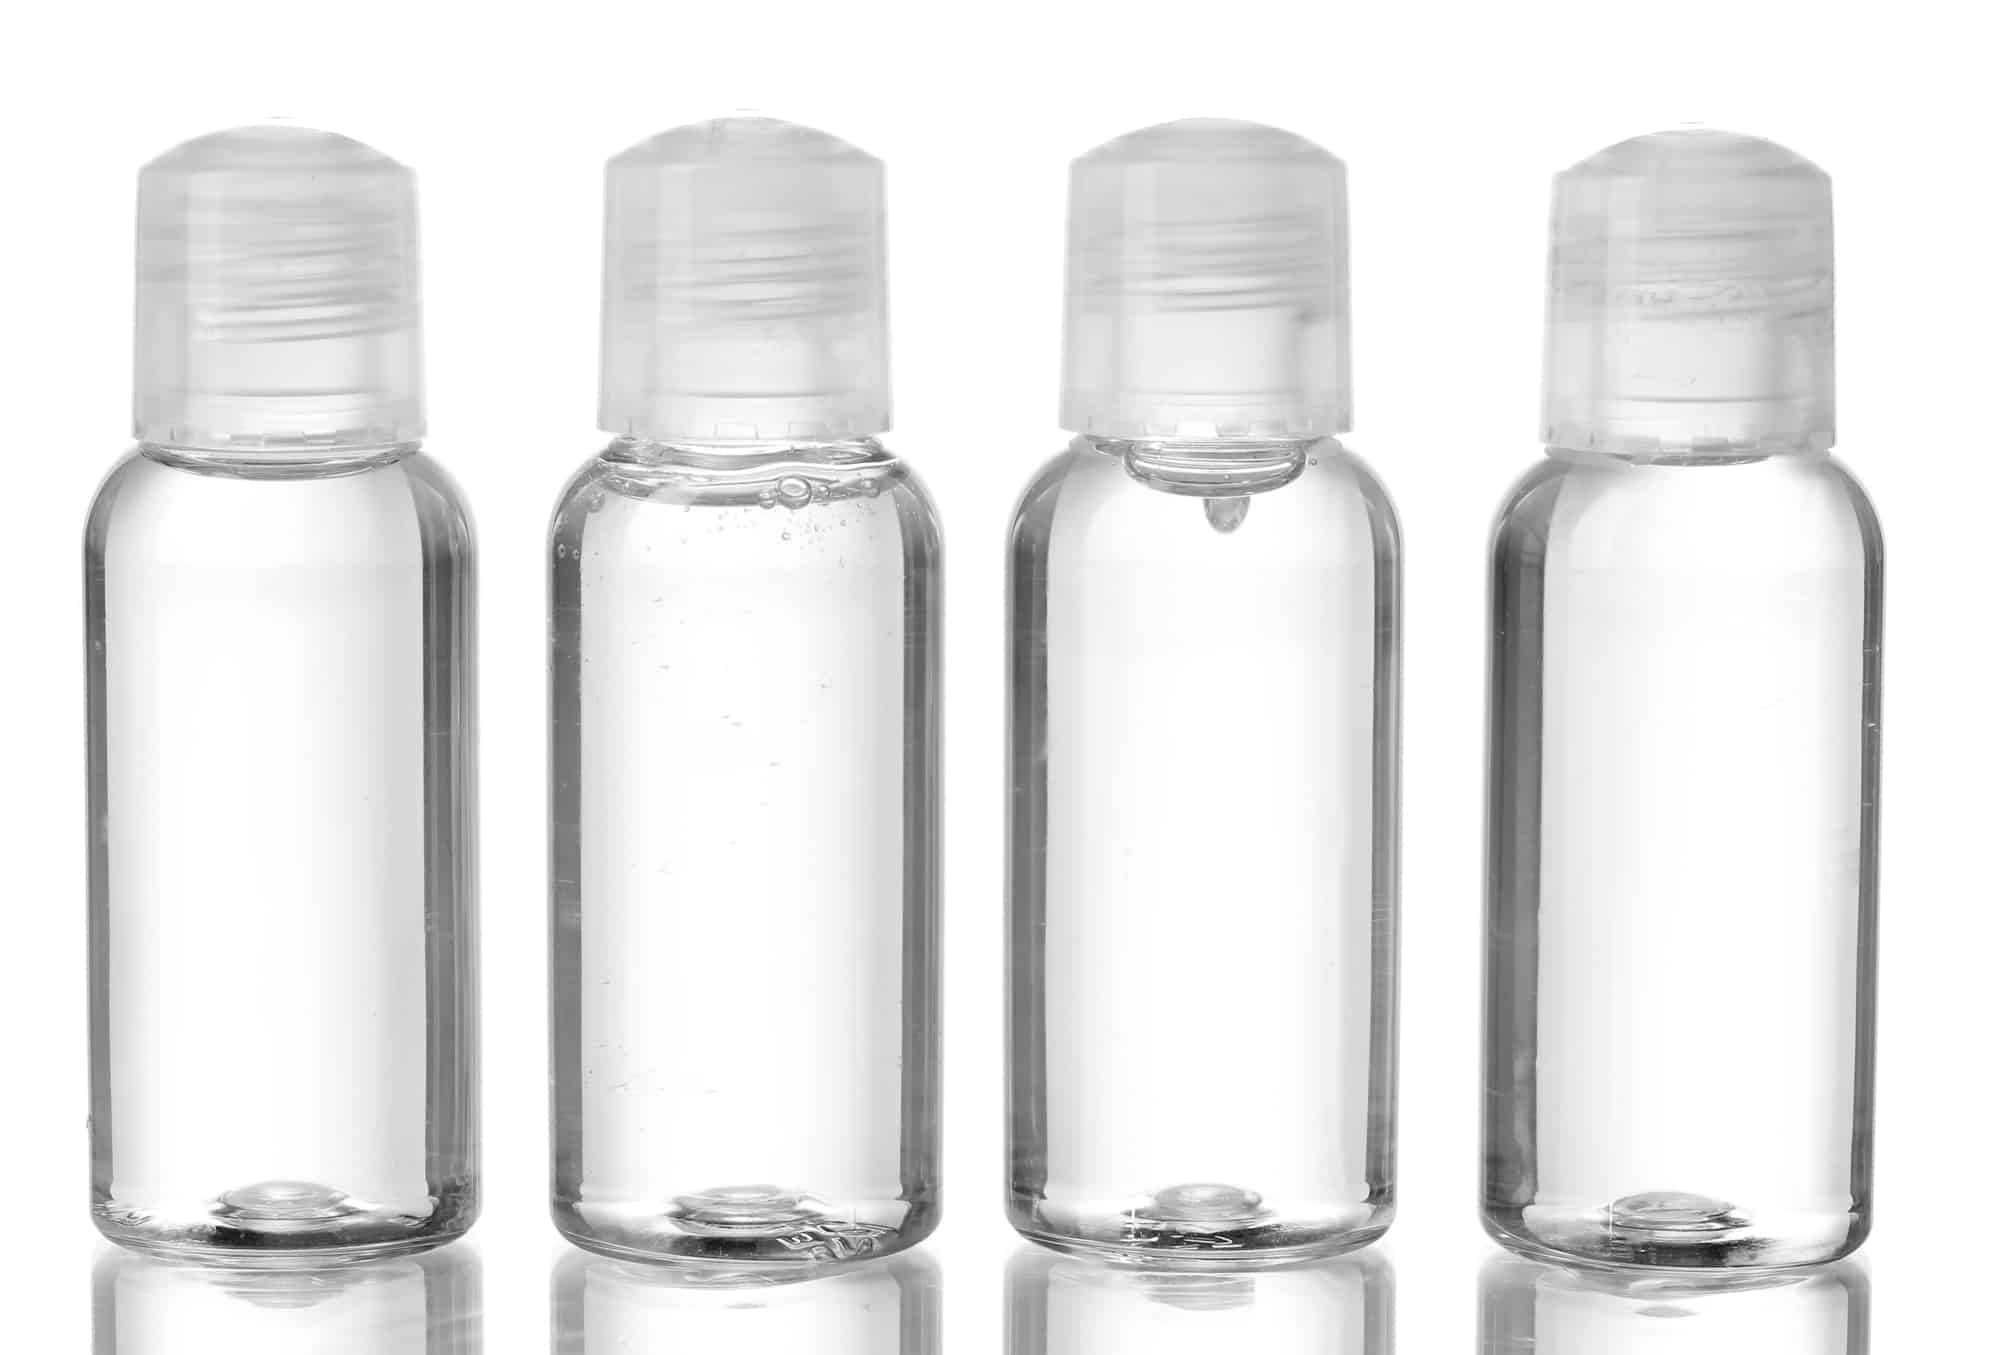 Hotel cosmetic single-use plastic shampoo bottles isolated on white